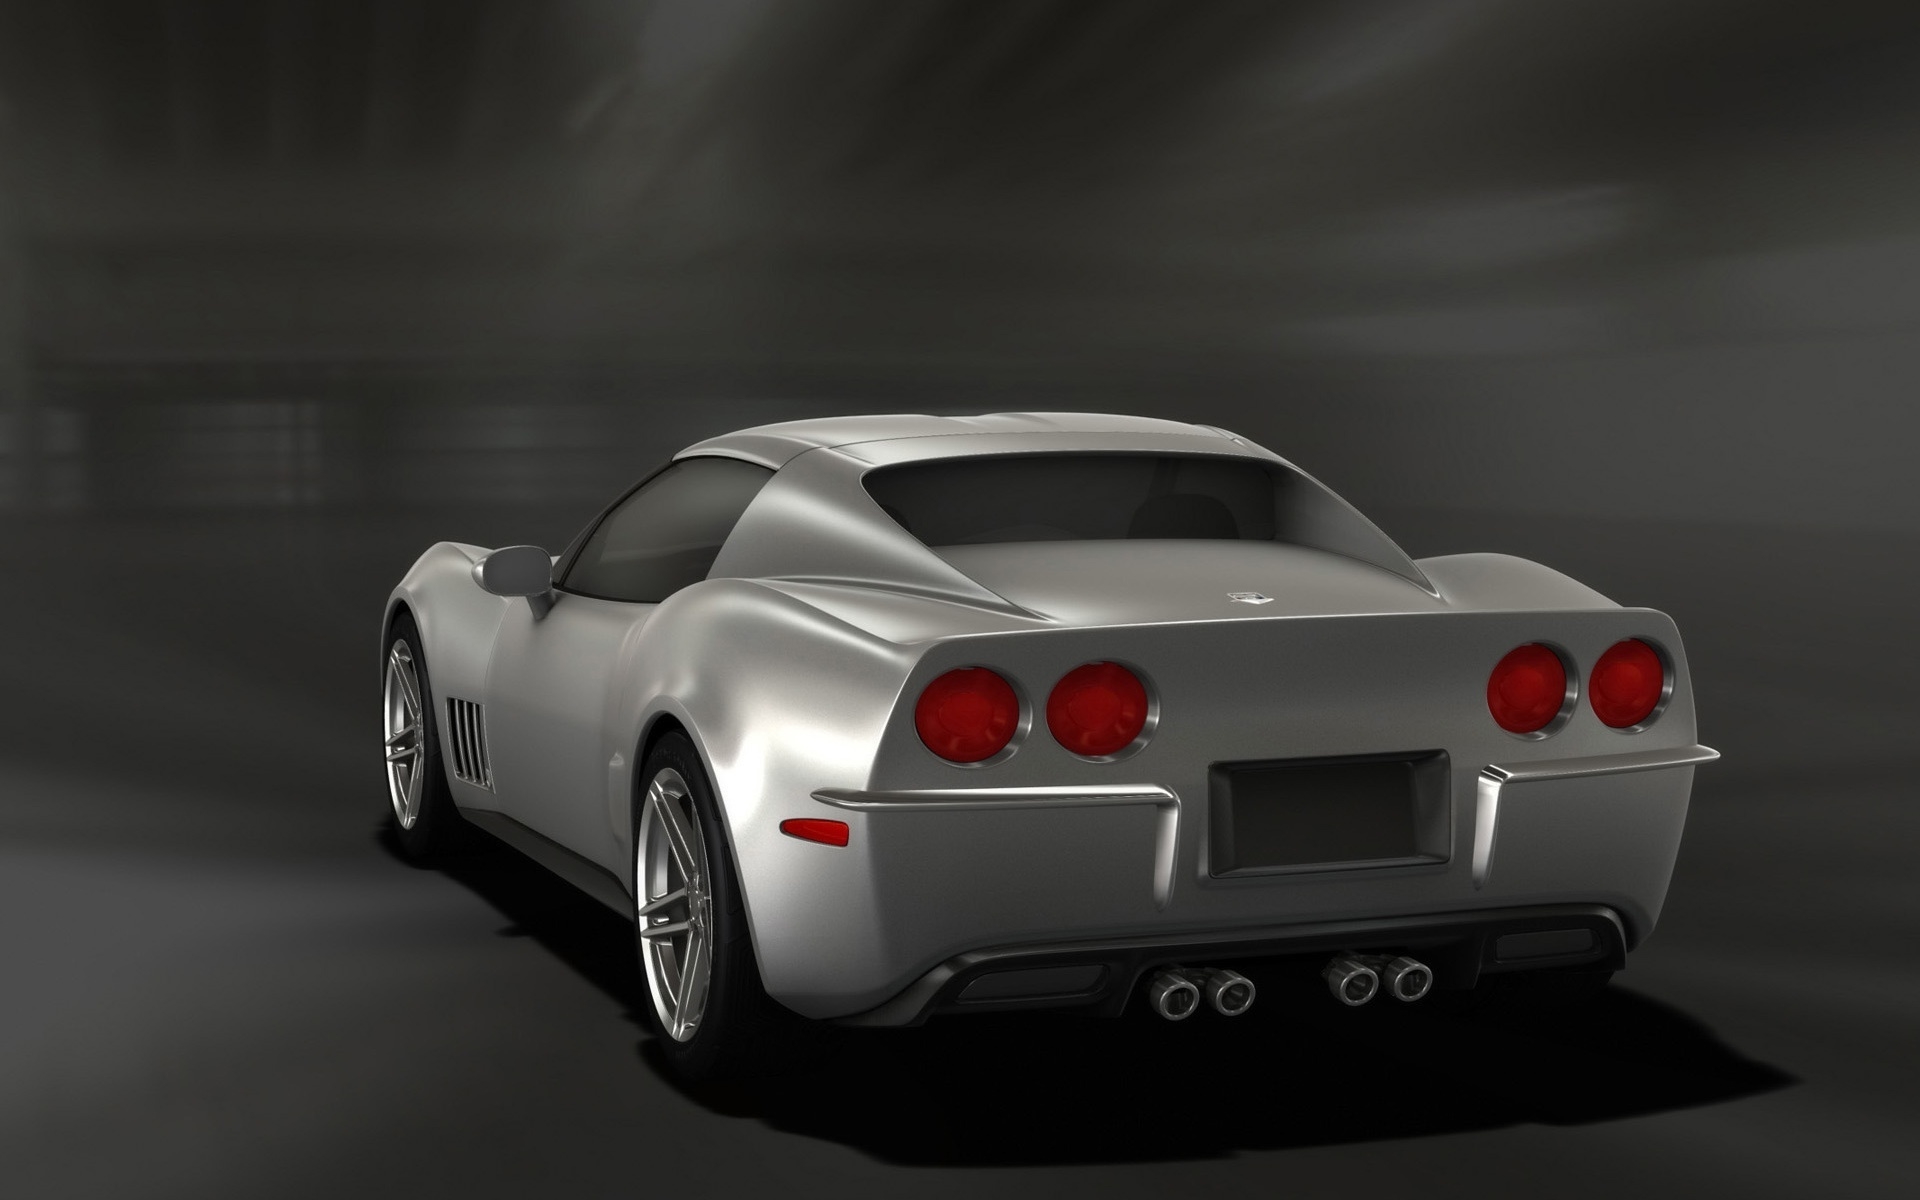 Retro Corvette Stingray Silver Rear Angle 2009 for 1920 x 1200 widescreen resolution